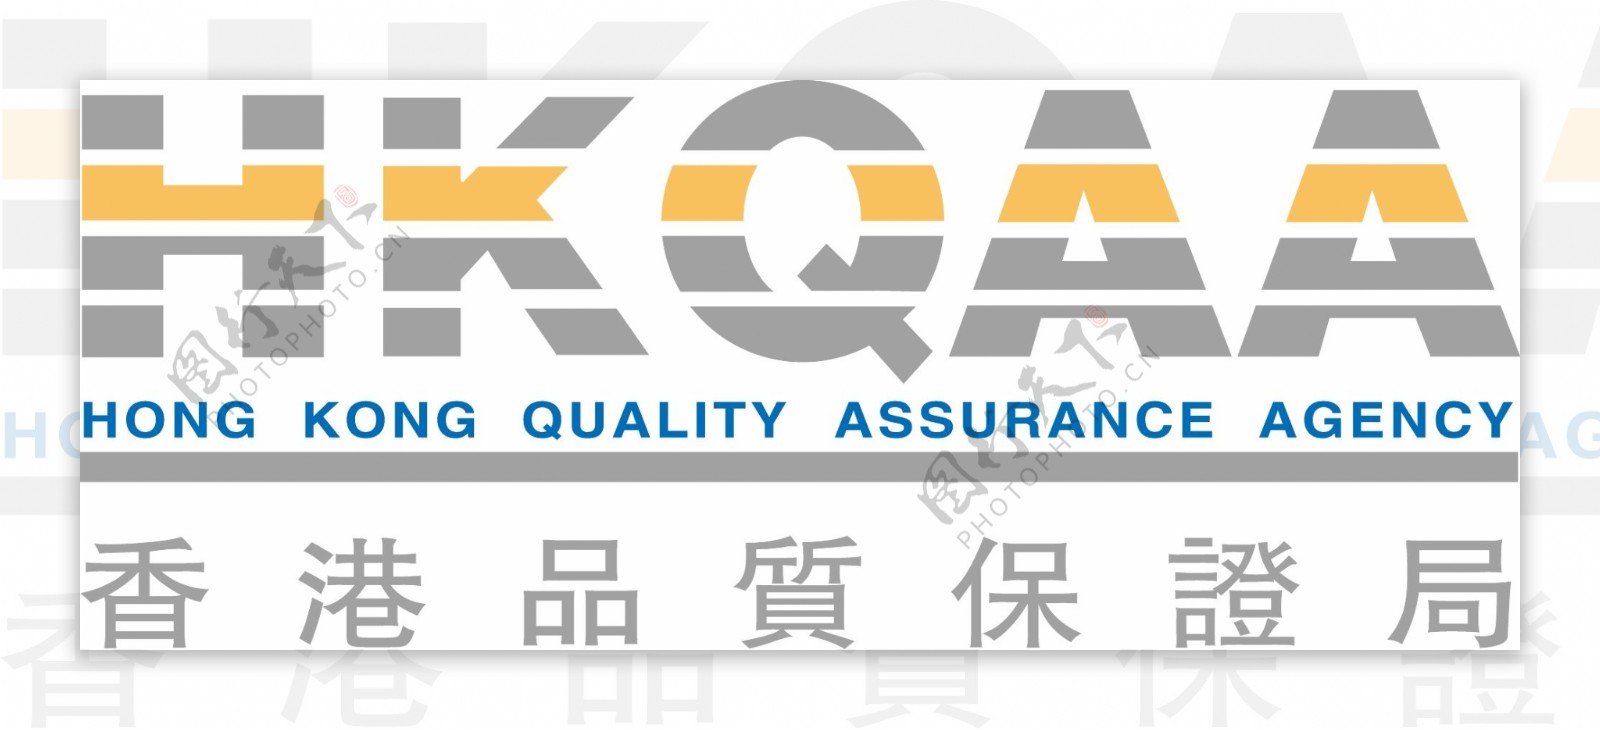 HKQAA香港品质保证局图片